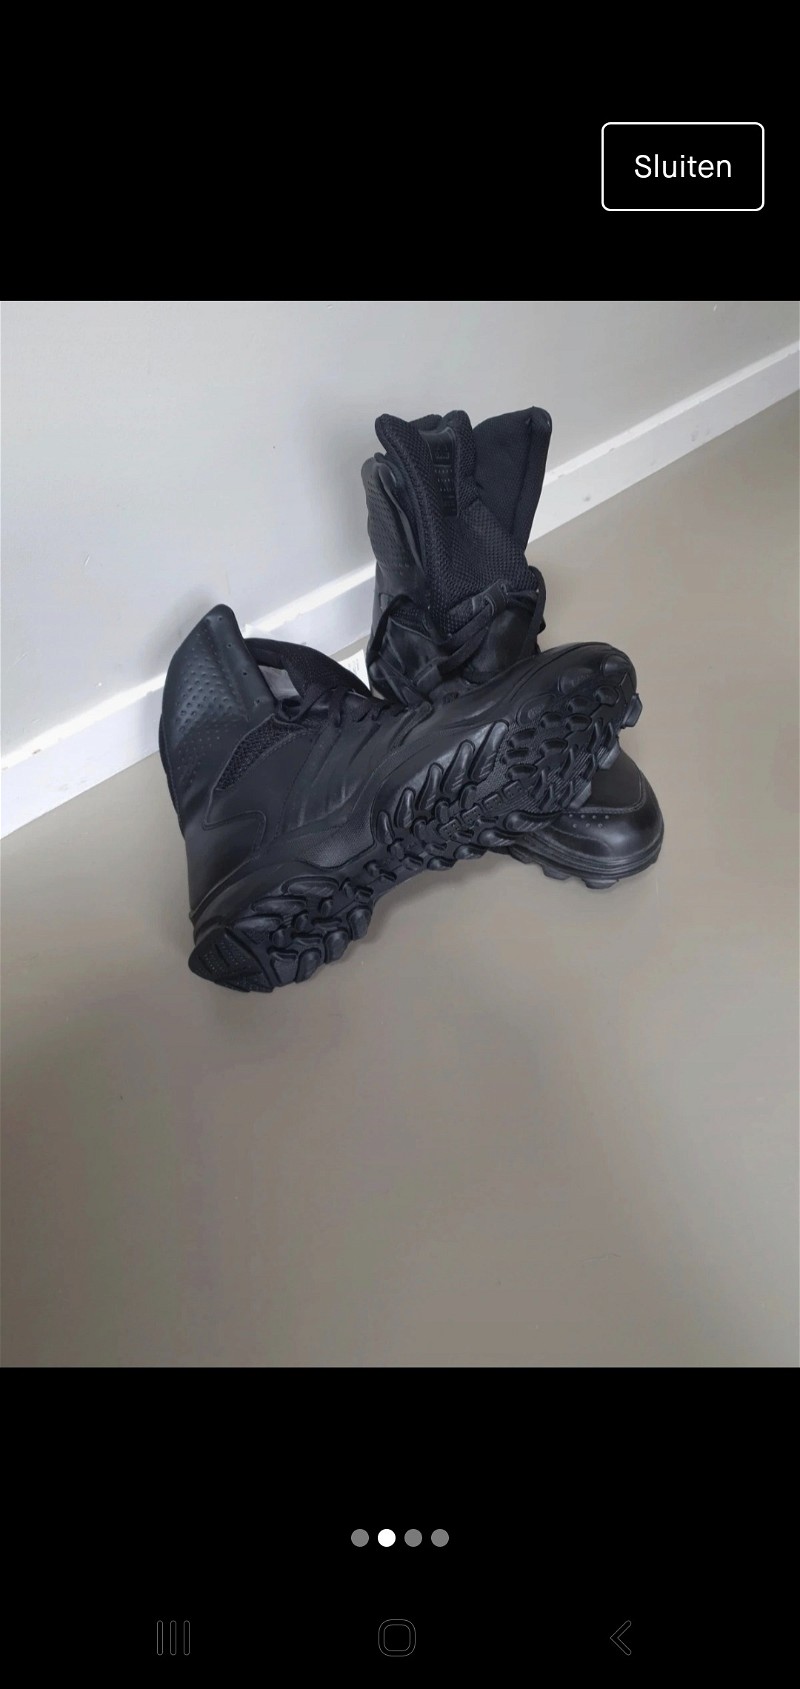 Afbeelding 1 van Adidas gsg 9.2 schoenen 45 kisten politie dsi defensie